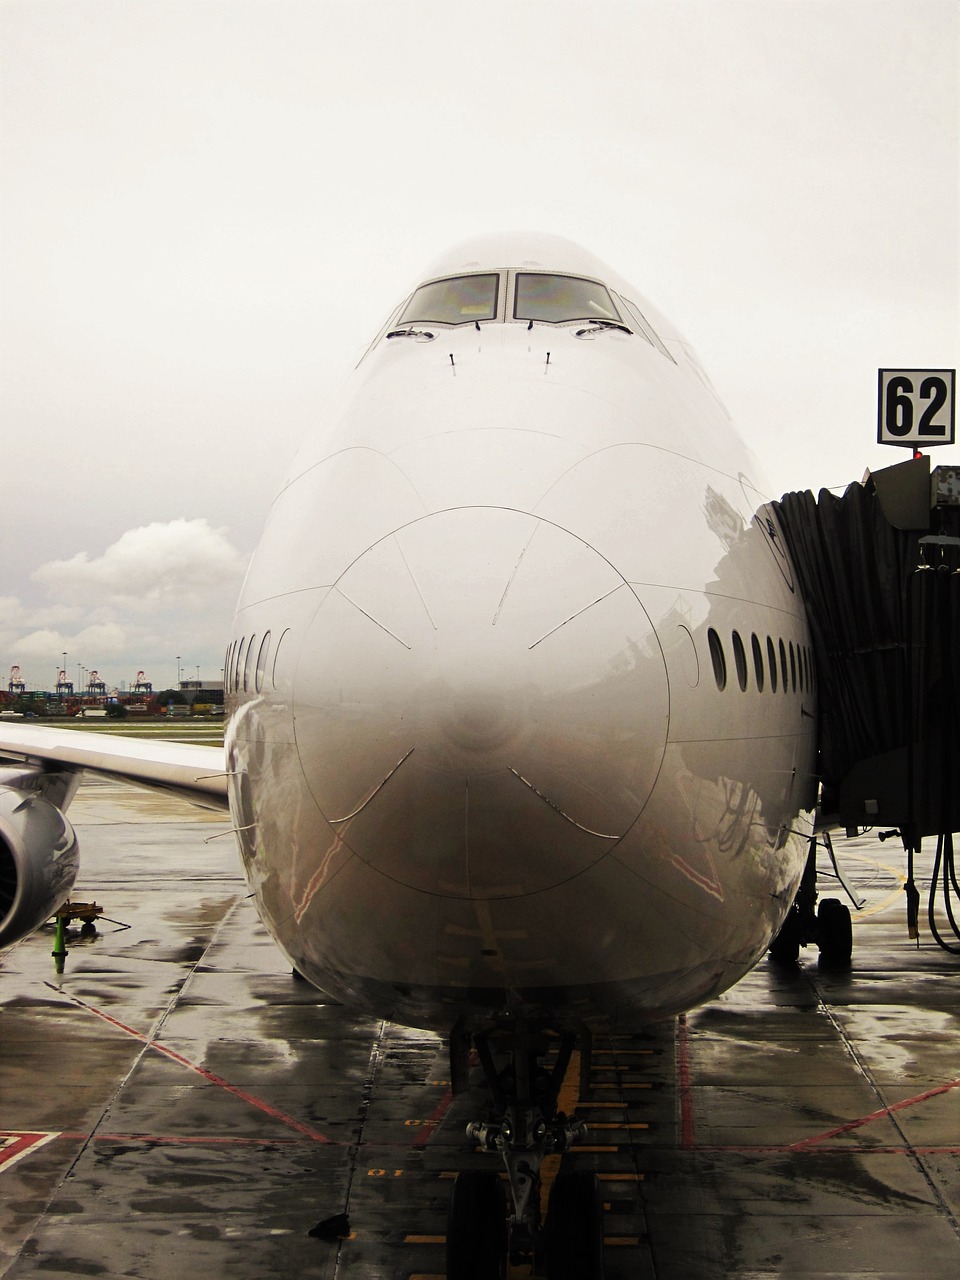 jumbo jet docked lufthansa 747-830 lower saxony free photo